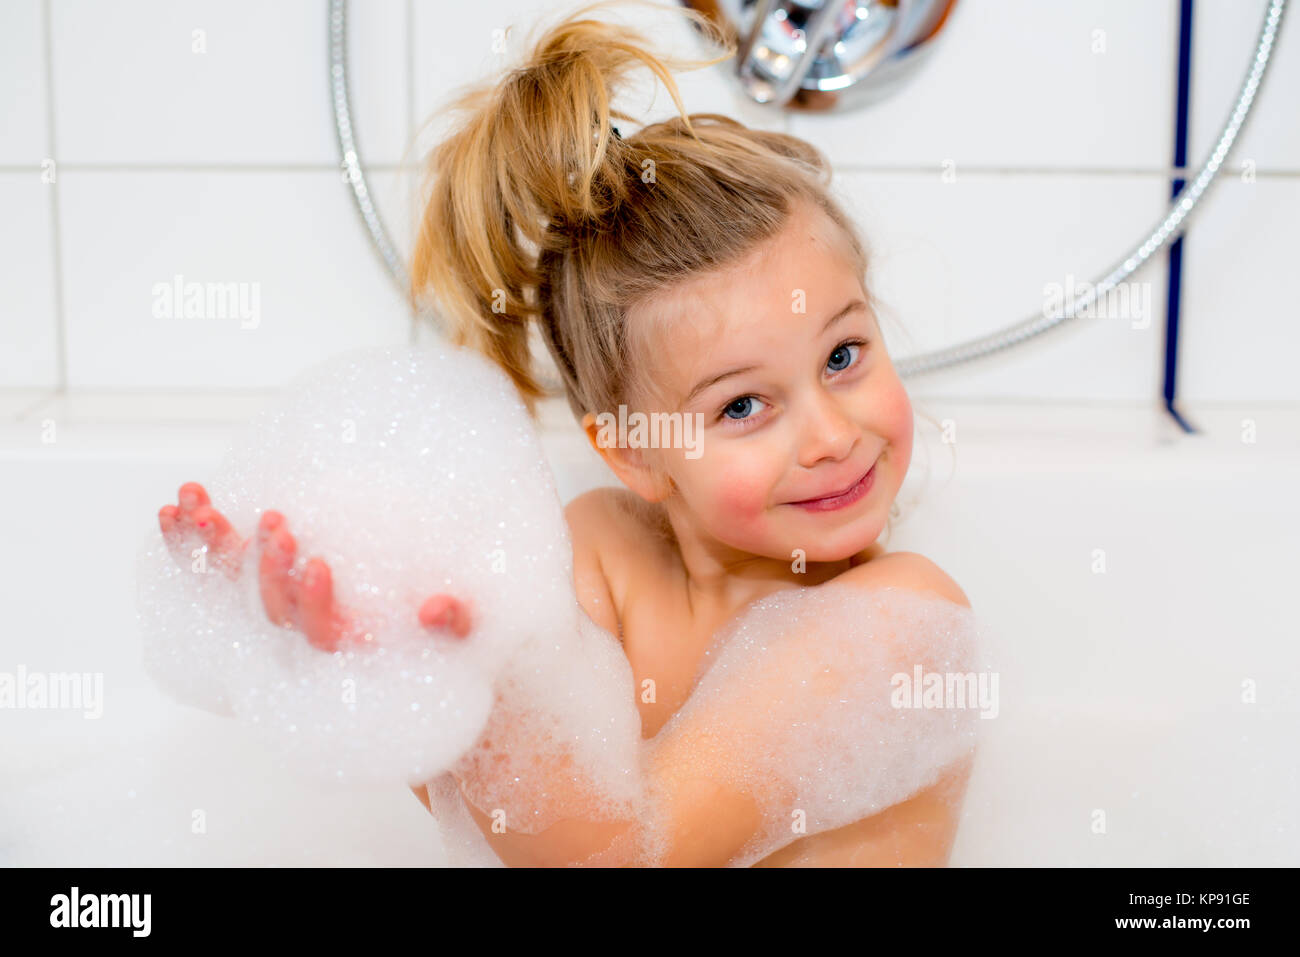 эротика голых девочек в ванной фото 53